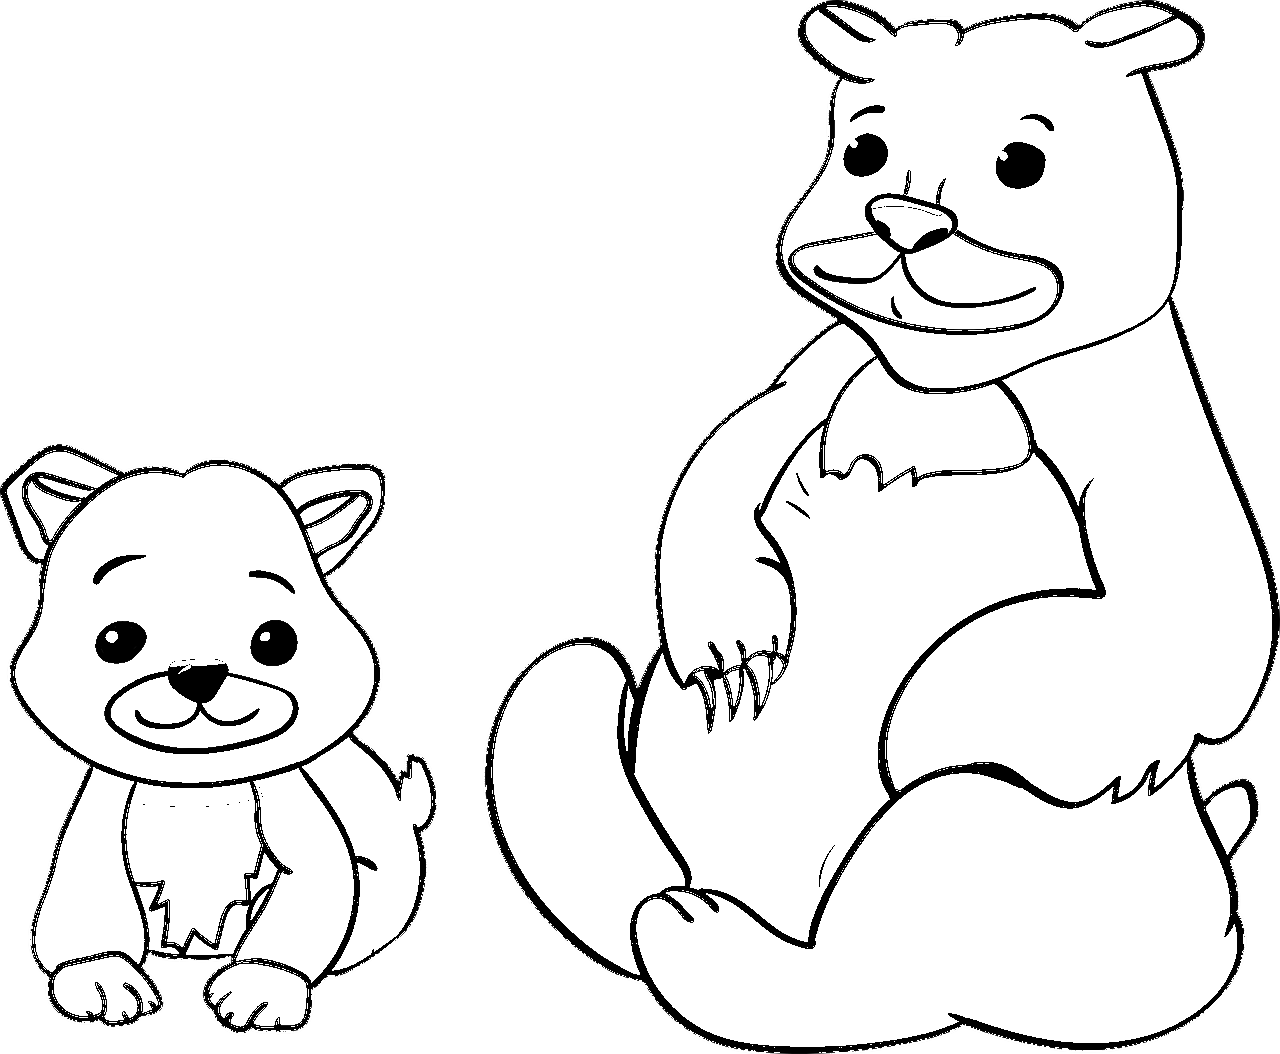 Disegno da colorare di mamma orsa e suo figlio